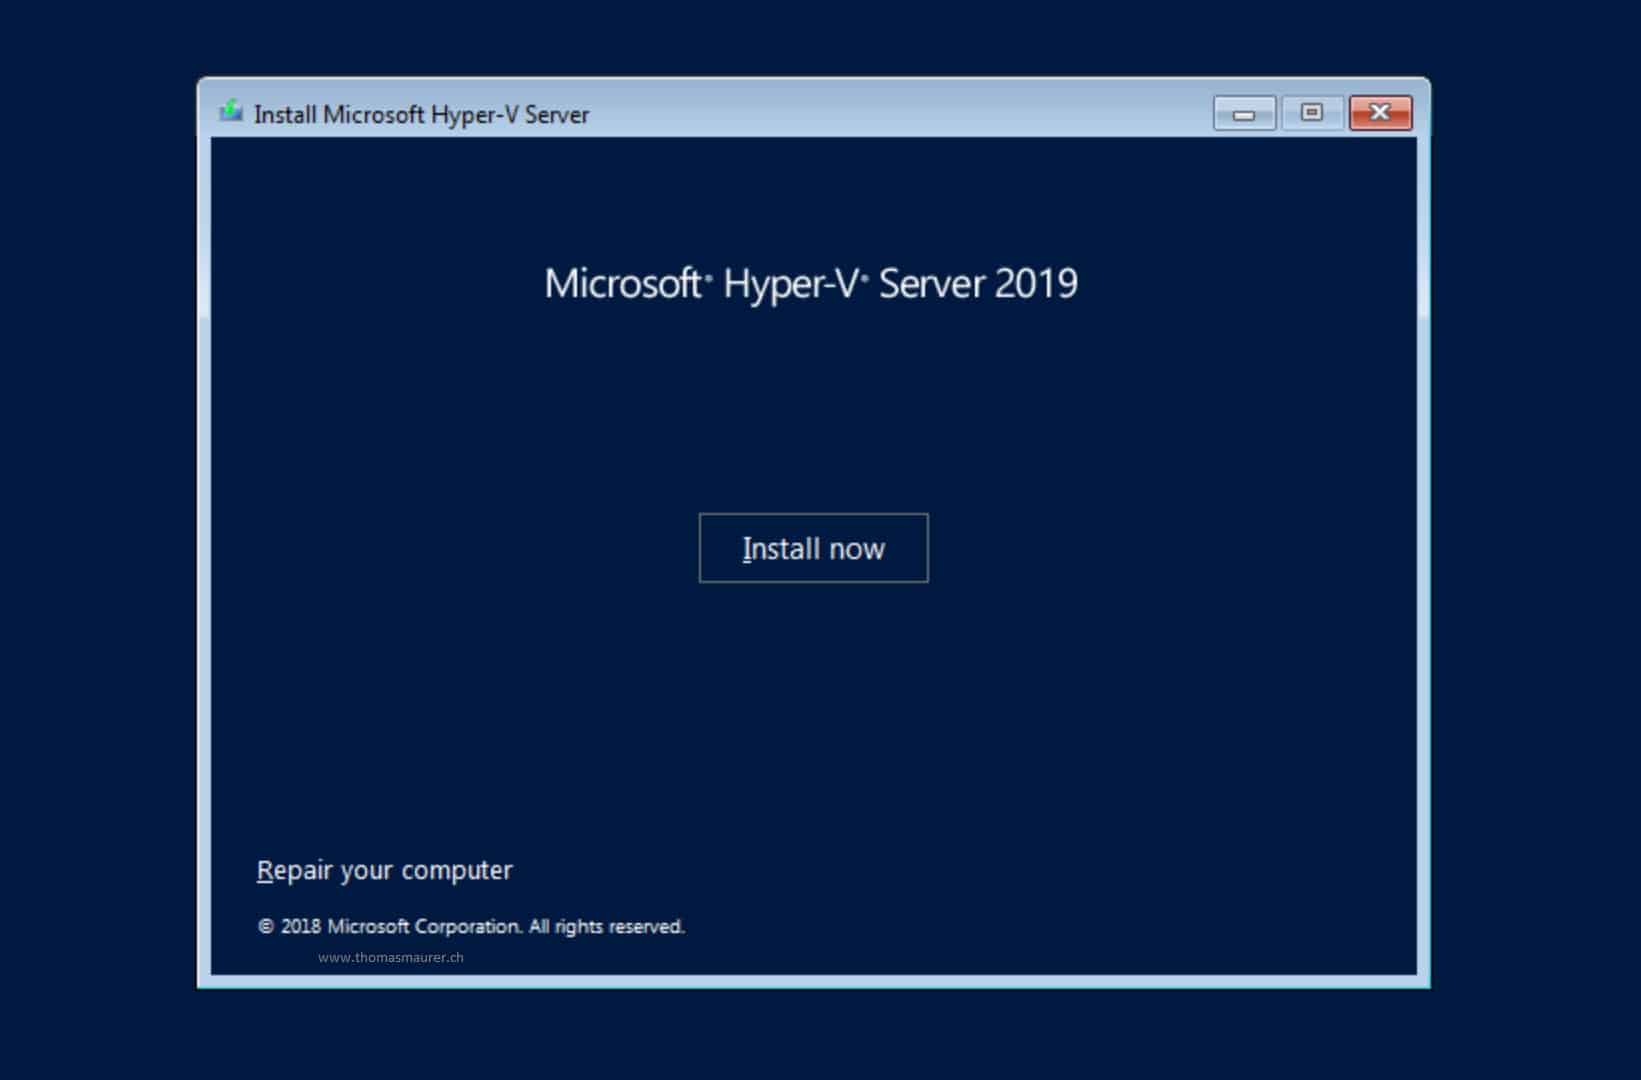 Hyper-V Server 2019 Install now